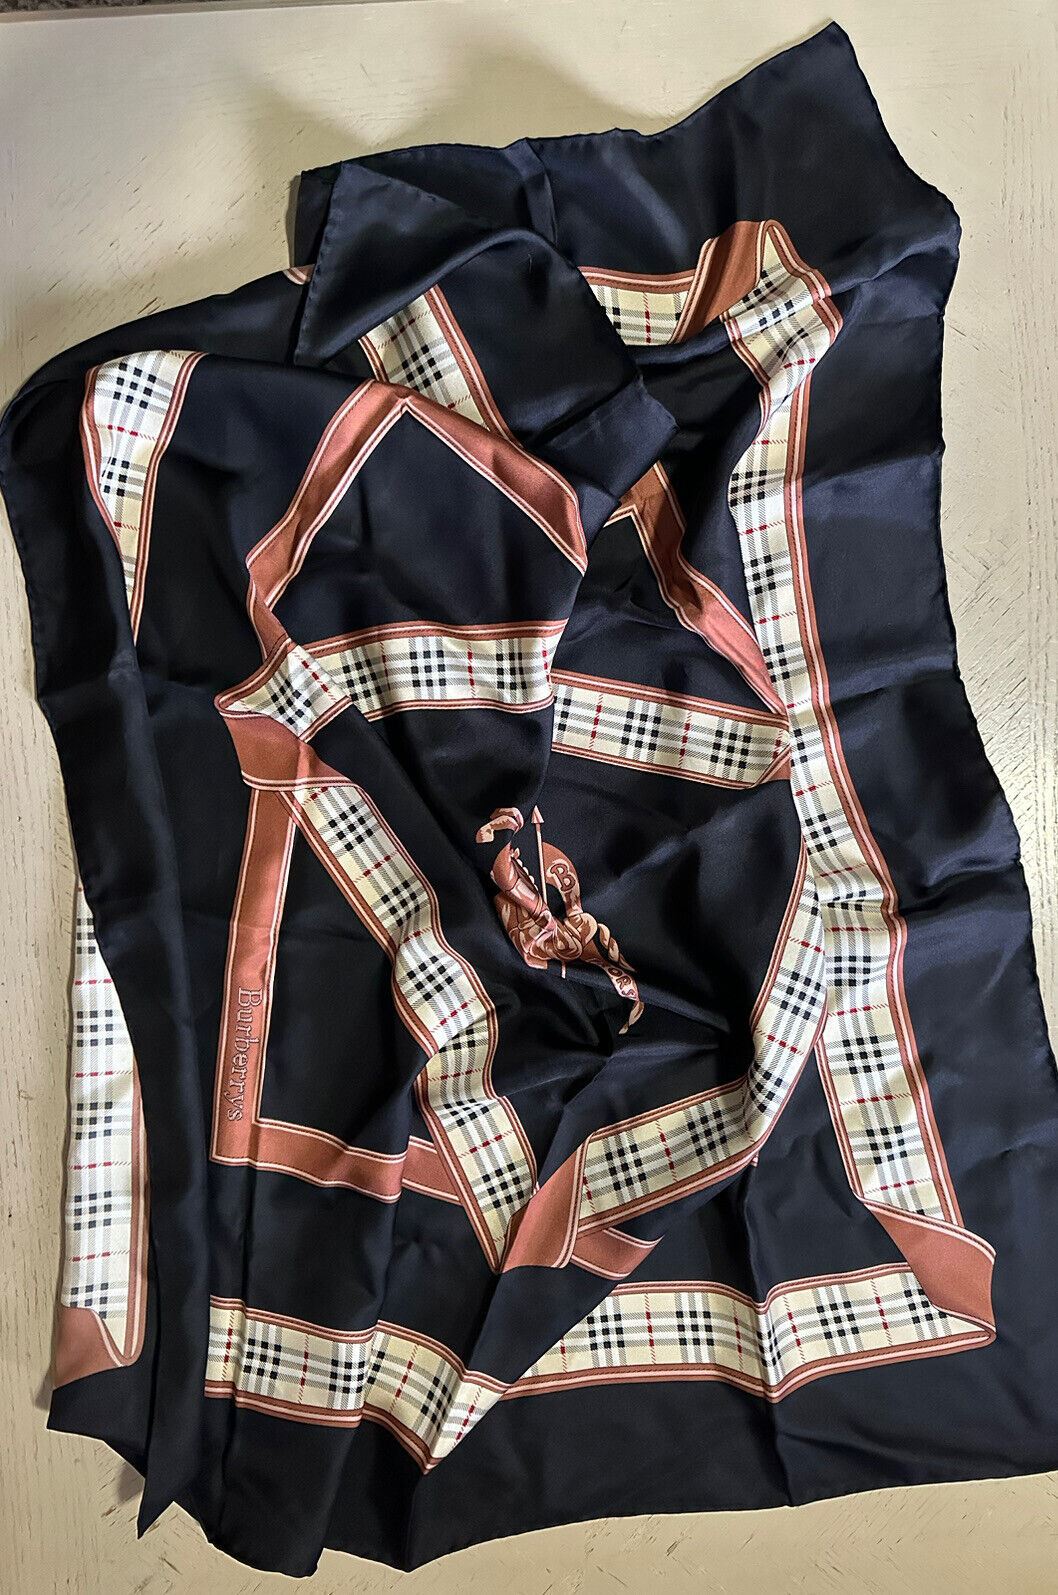 Новый шелковый шарф Burberry в клетку с логотипом Burberry, черный, Италия, за 800 долларов